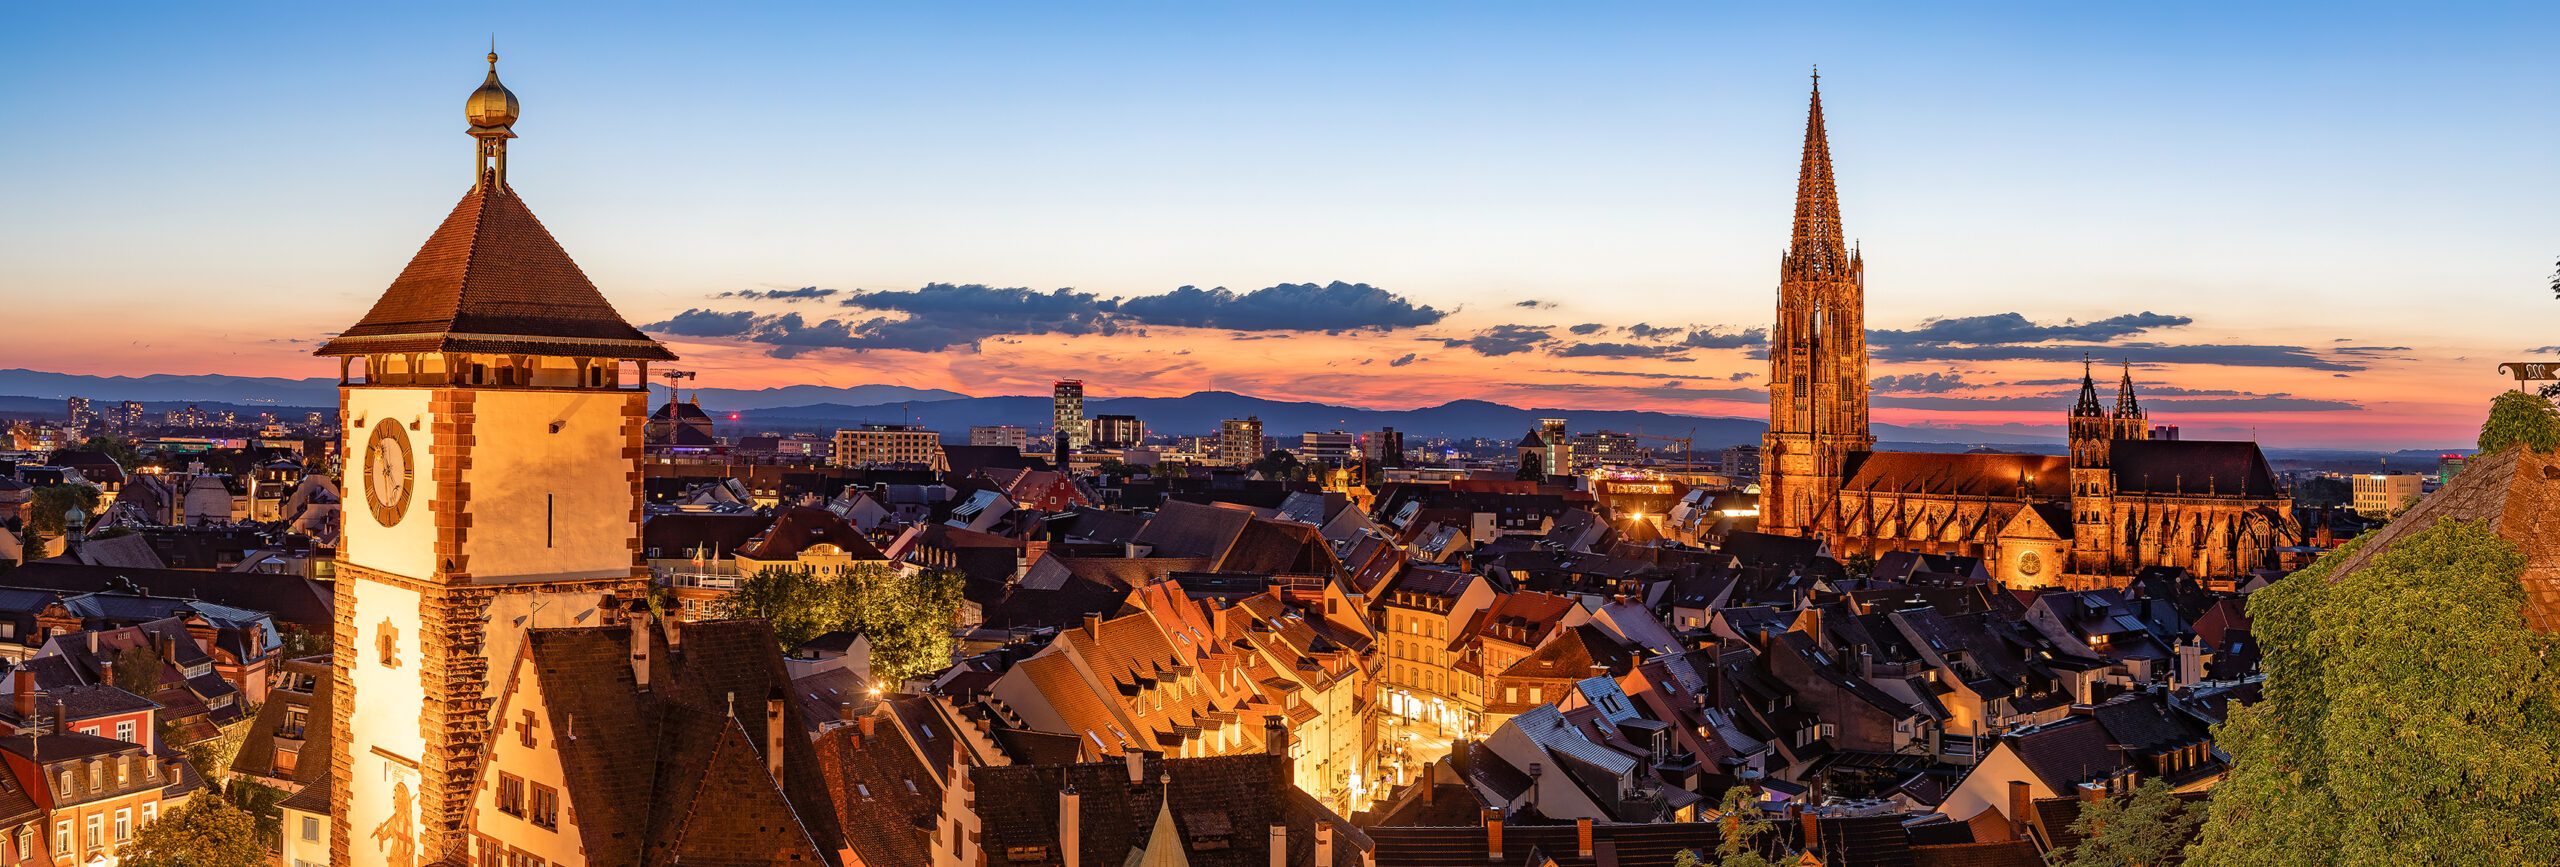 Schwabentor und Münster im Abendlicht, Freiburg